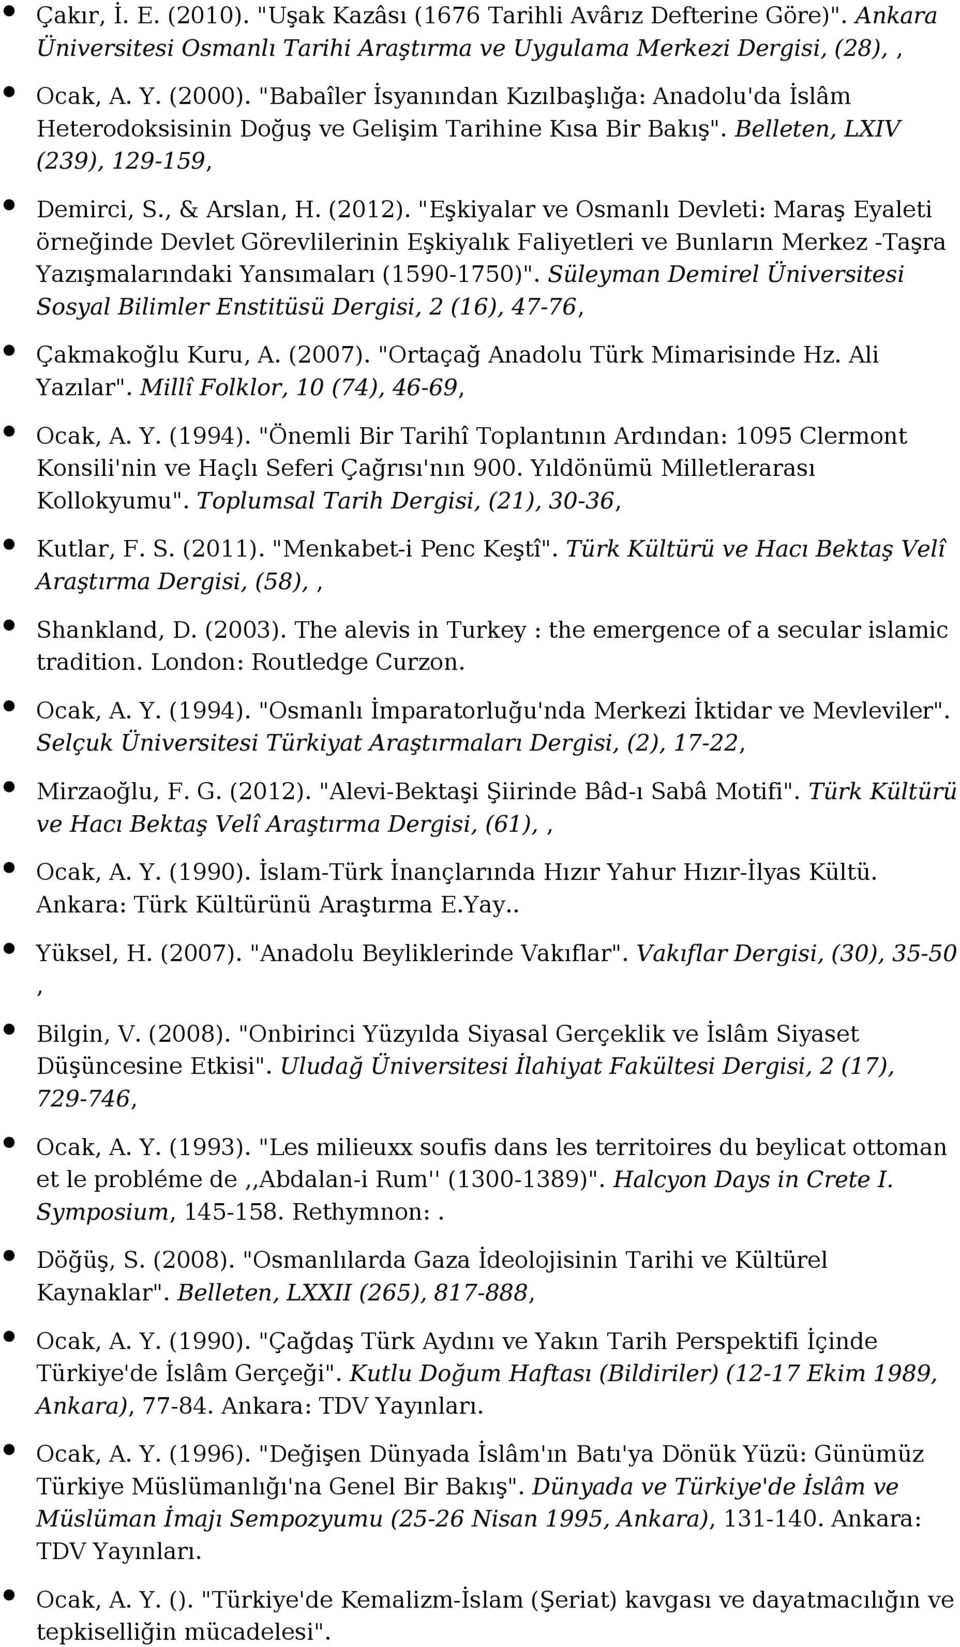 "Eşkiyalar ve Osmanlı Devleti: Maraş Eyaleti örneğinde Devlet Görevlilerinin Eşkiyalık Faliyetleri ve Bunların Merkez -Taşra Yazışmalarındaki Yansımaları (1590-1750)".